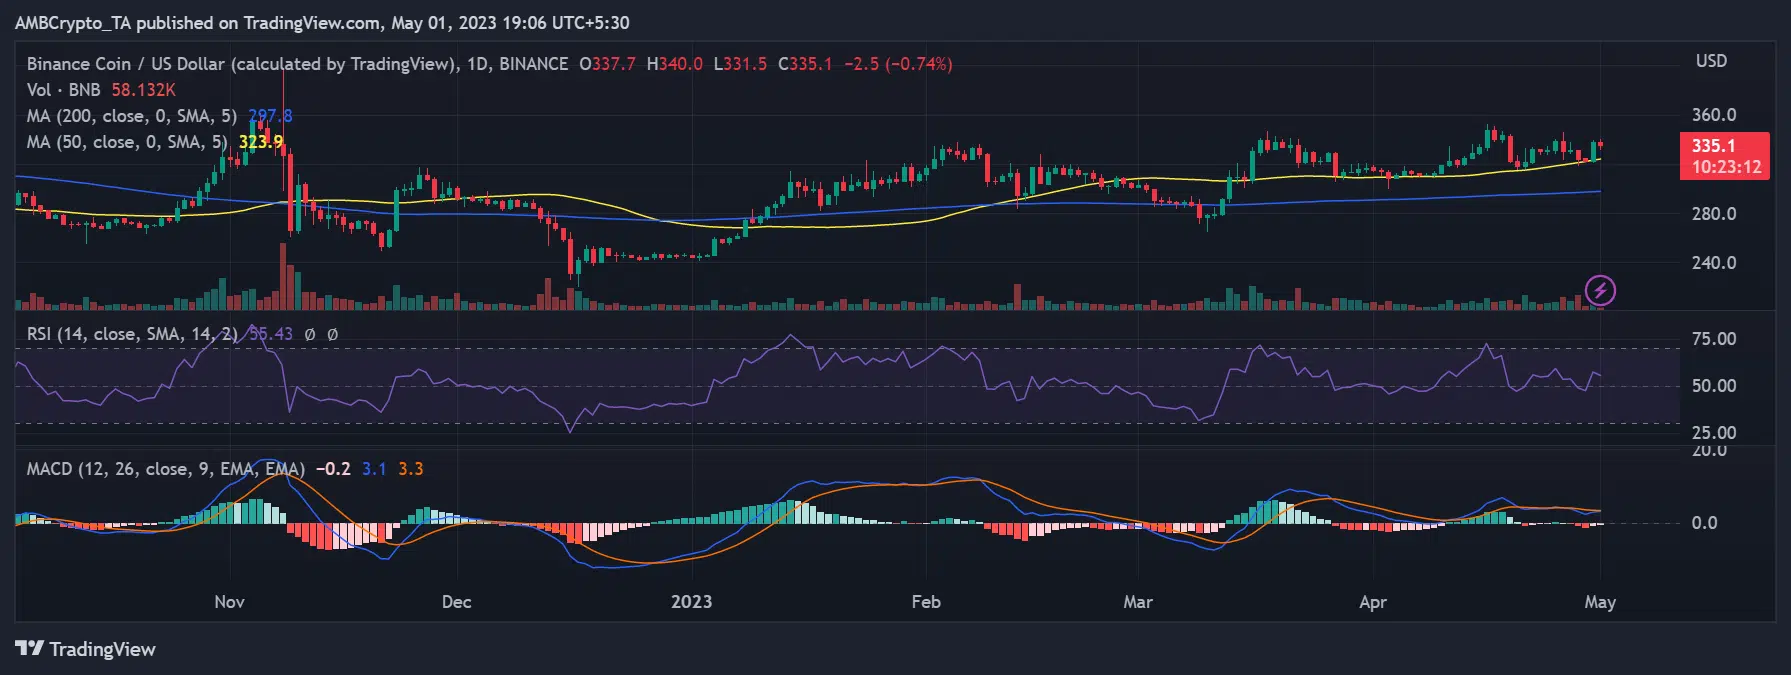 BNB/USD price move